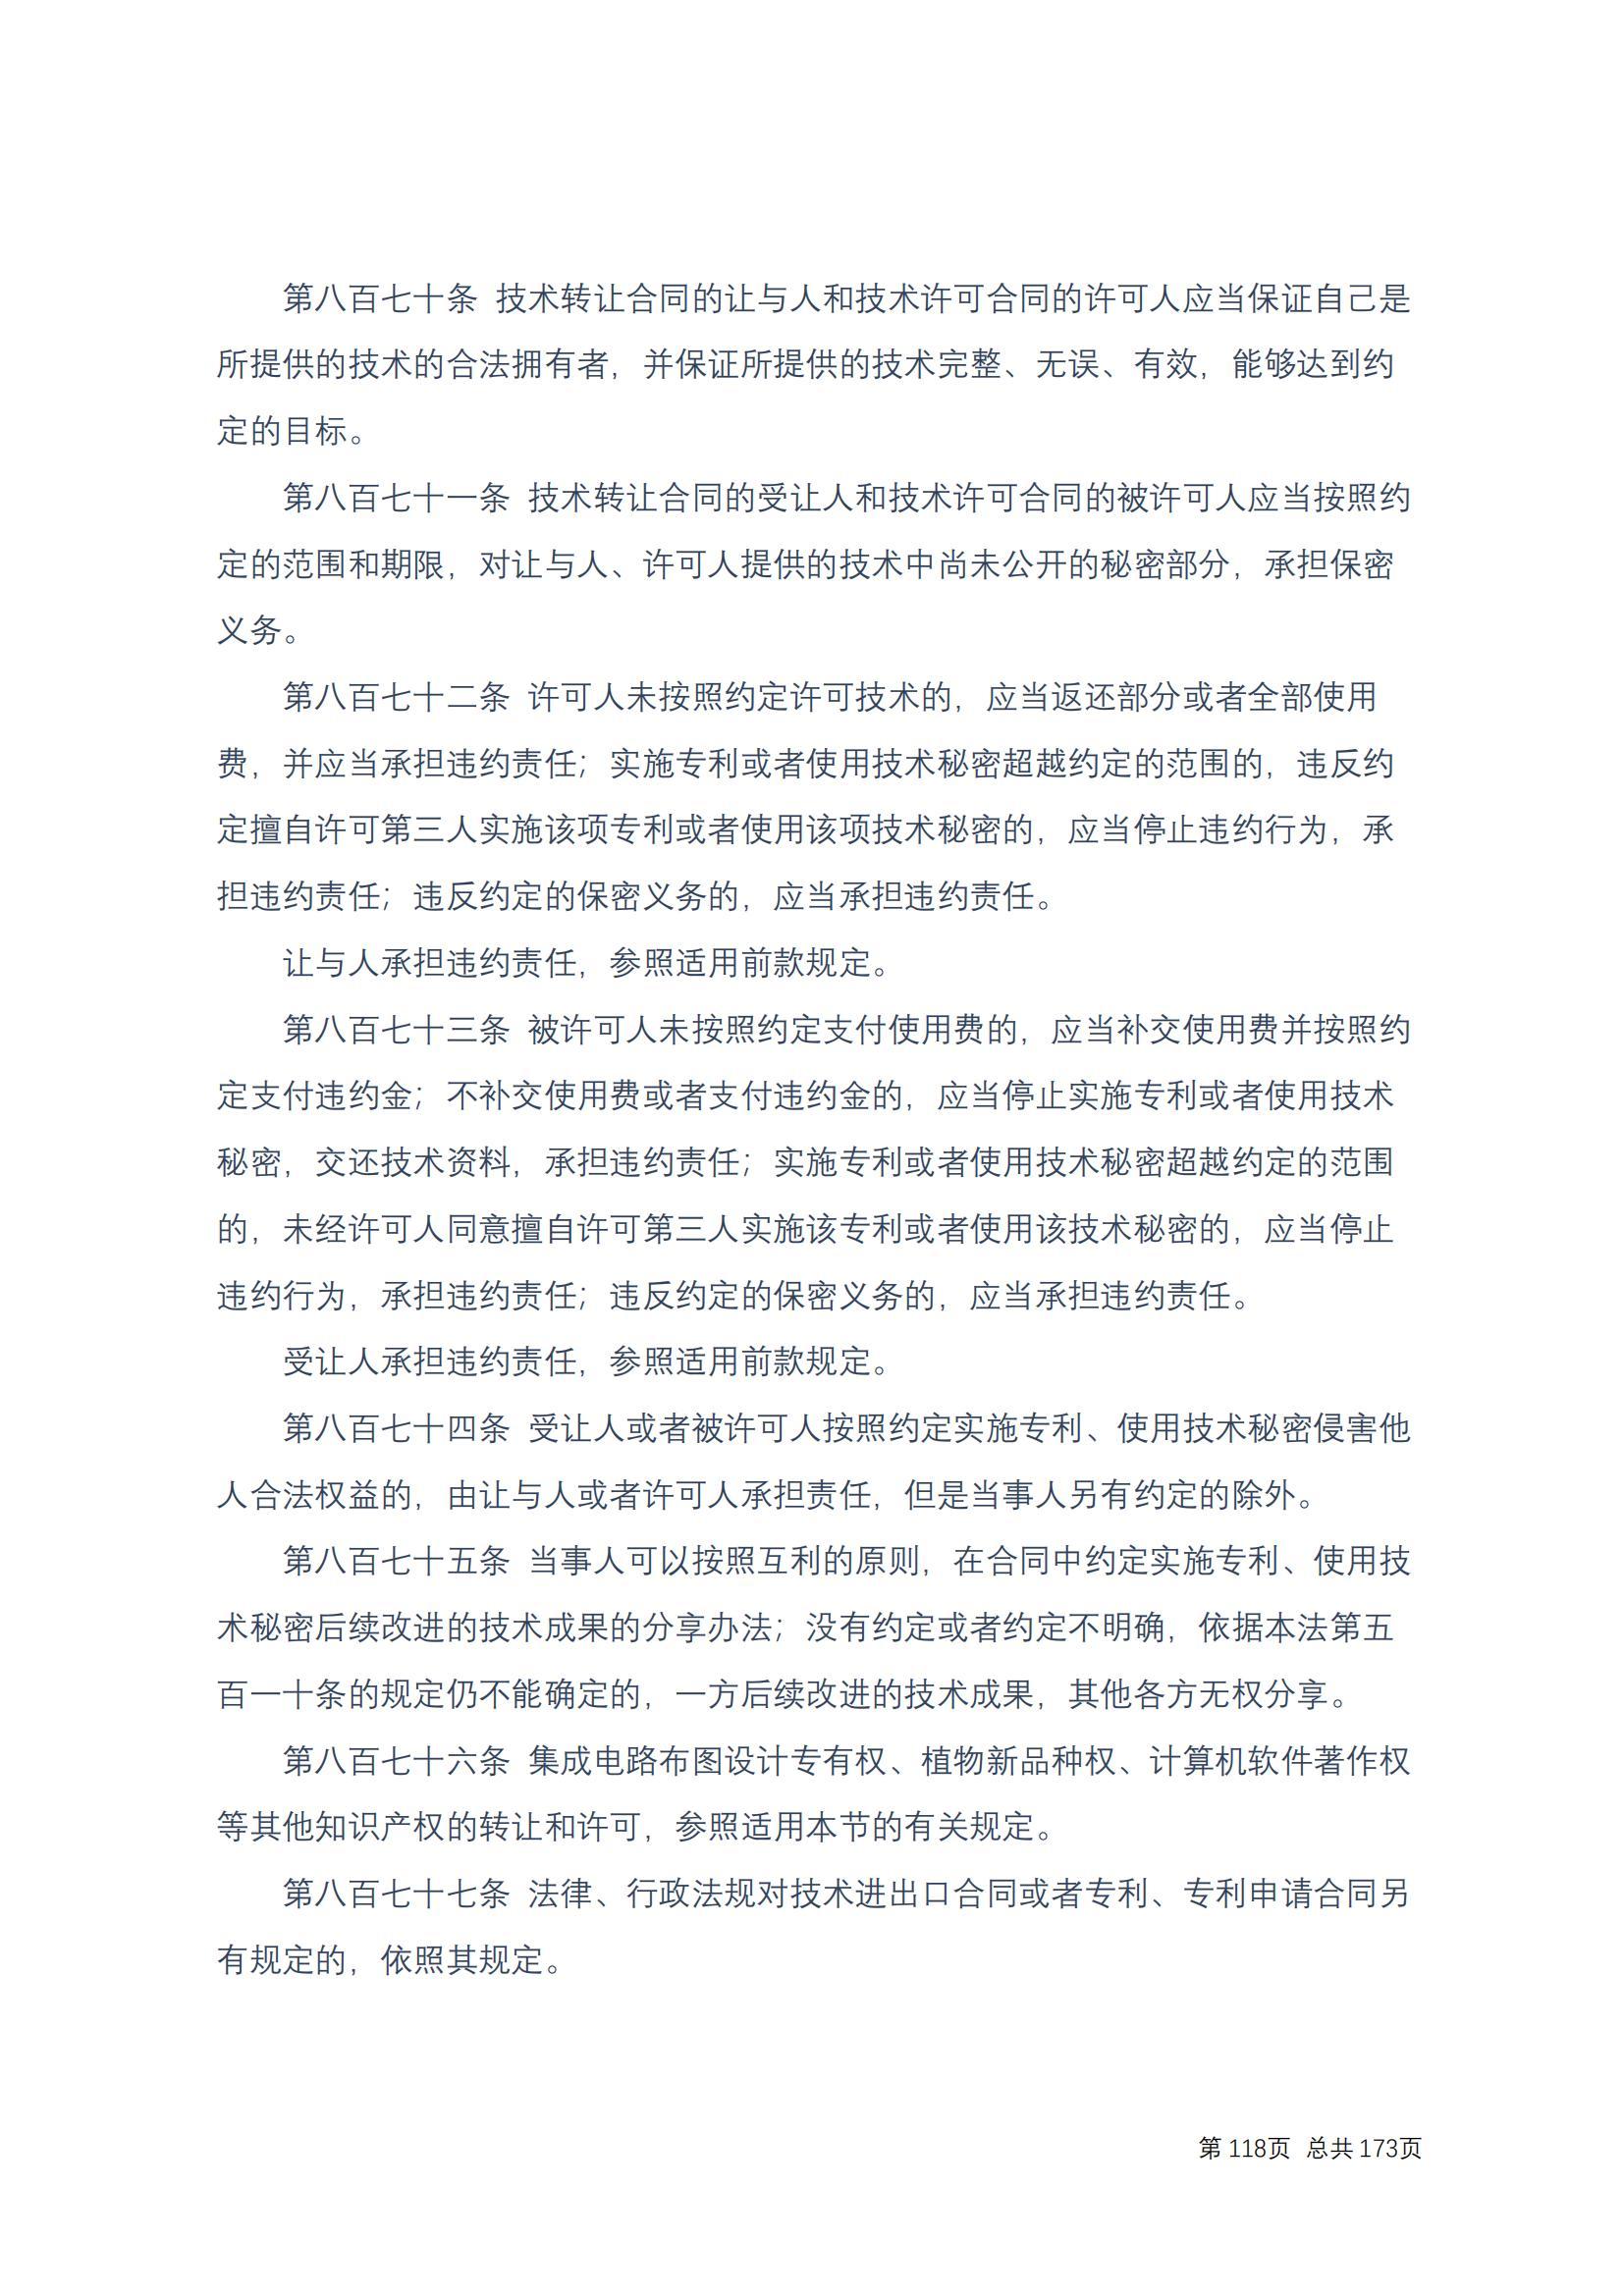 中华人民共和国民法典 修改过_117